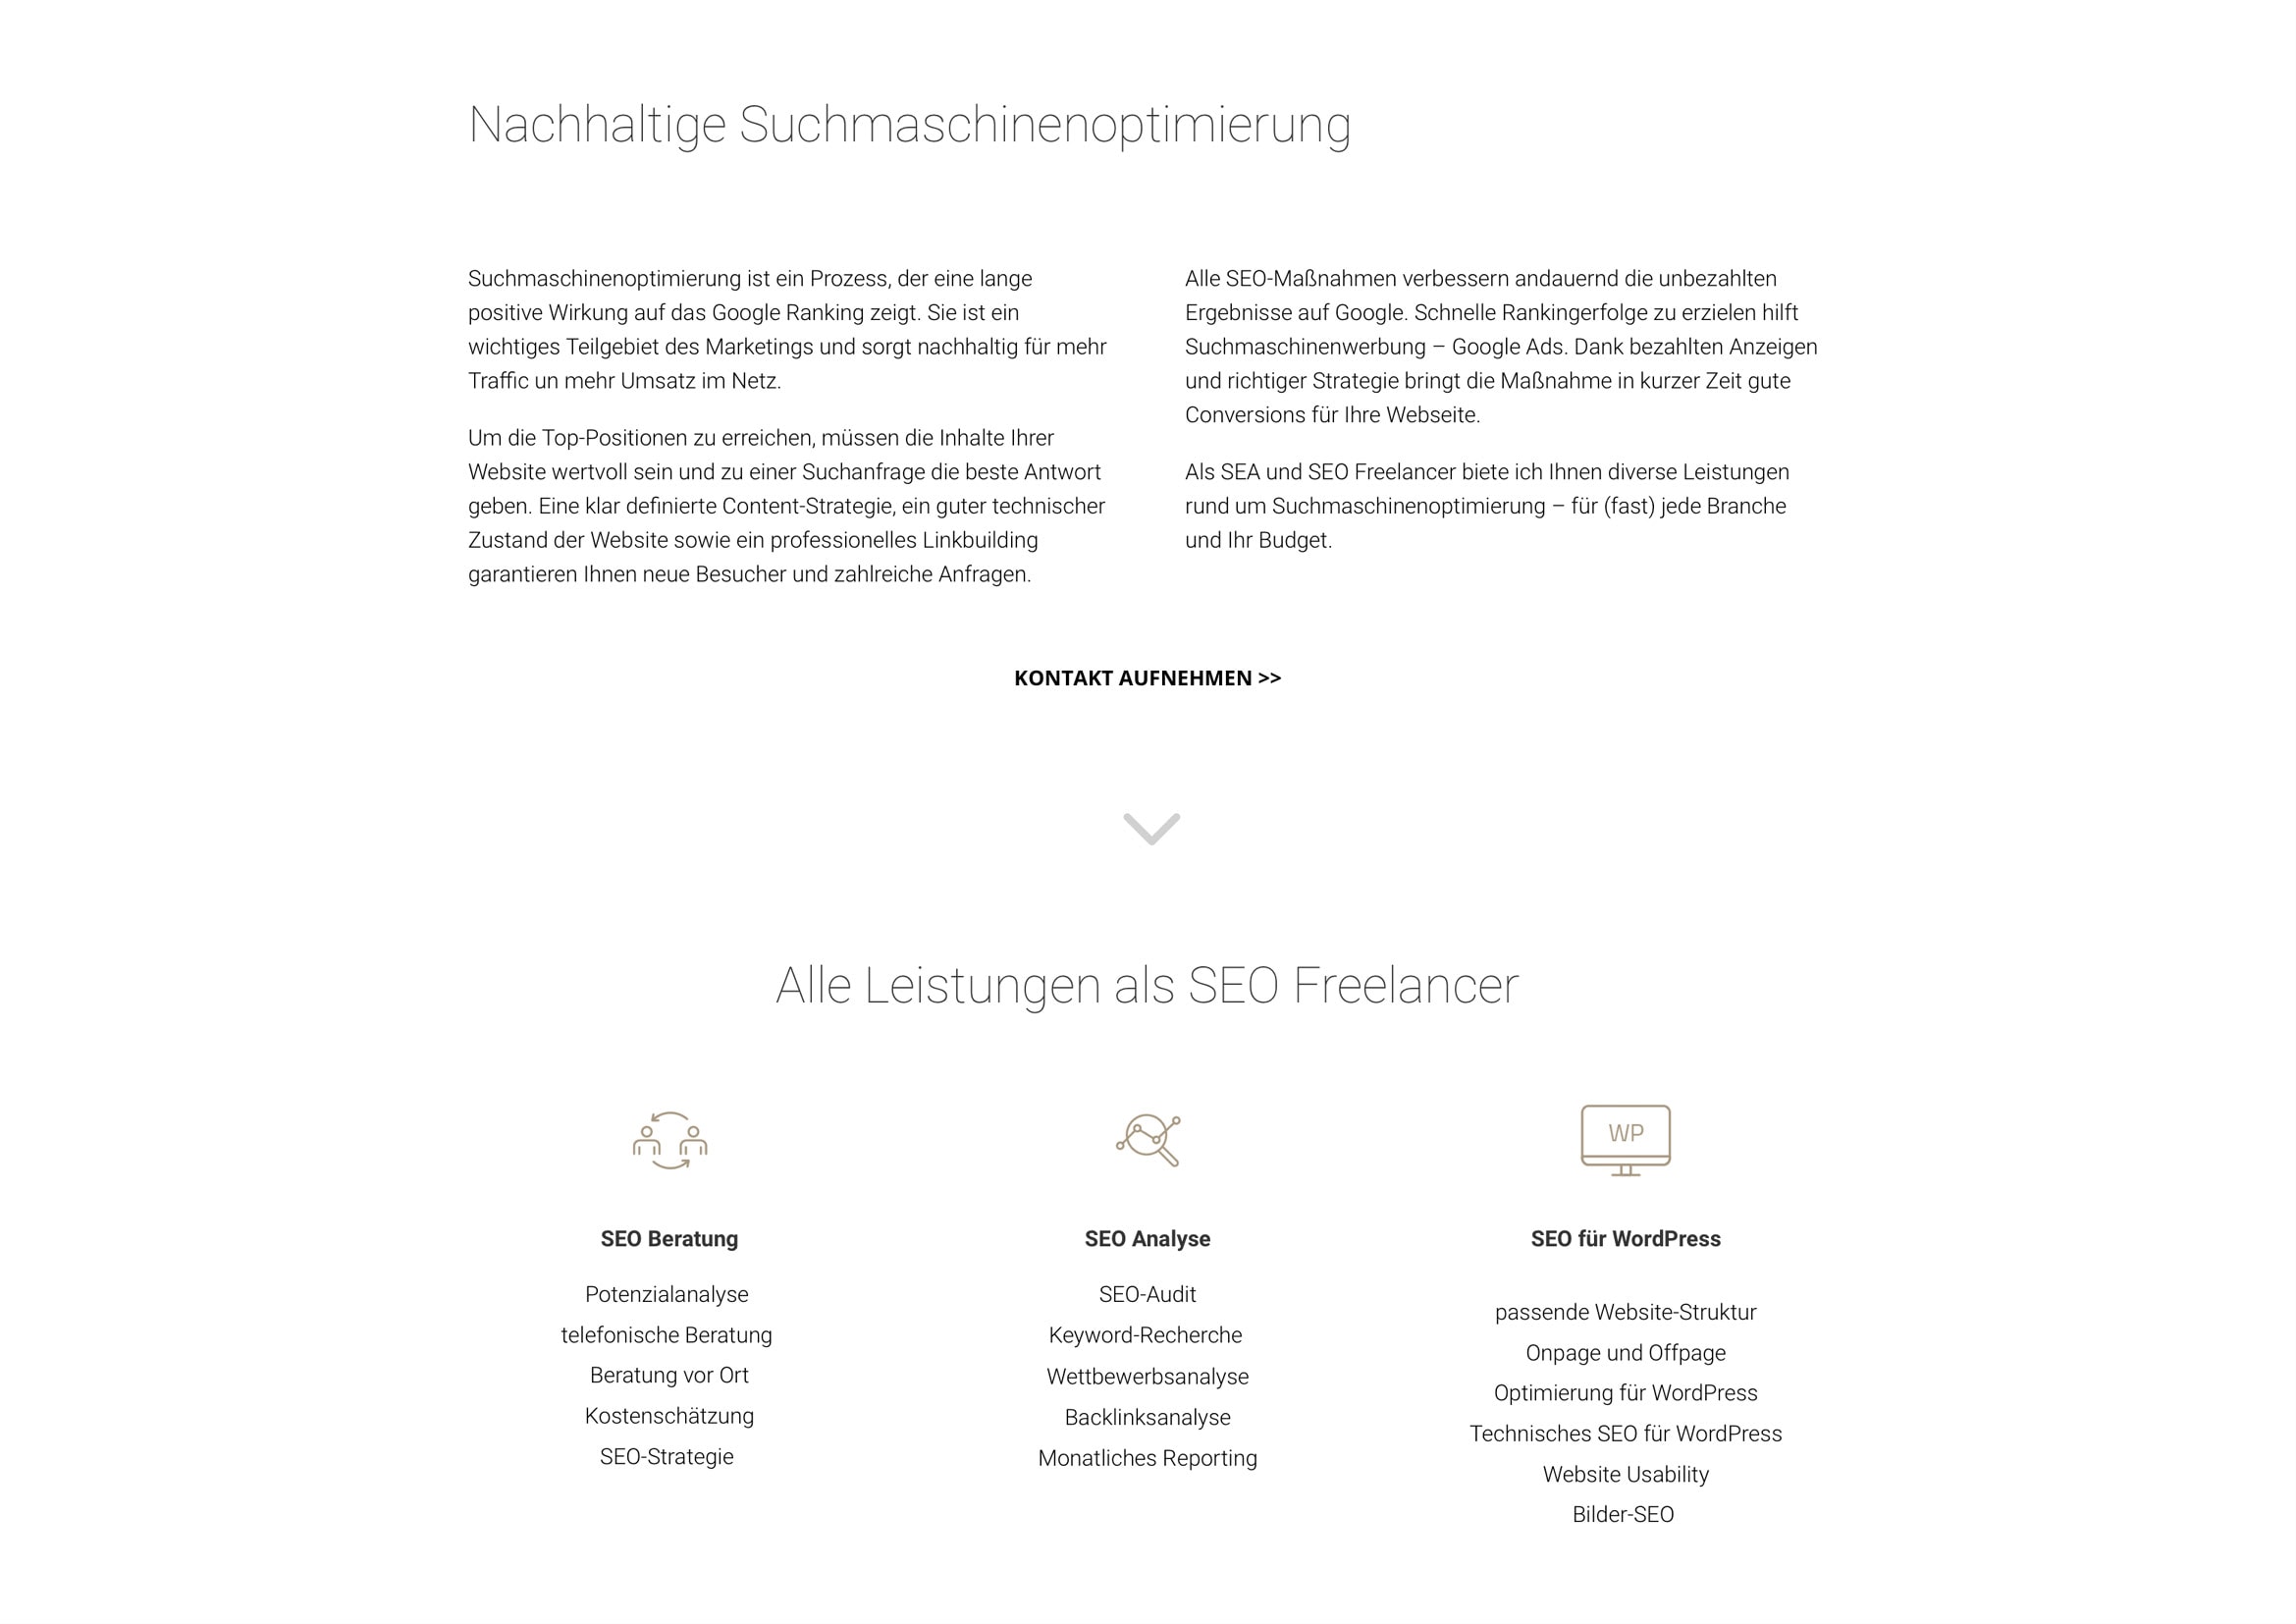 Homepage, Logo und Corporate Design Entwicklung für Olga Lesnykh Digital Marketing / SEO Freelancer Frankfurt durch Webdesigner Ronald Wissler